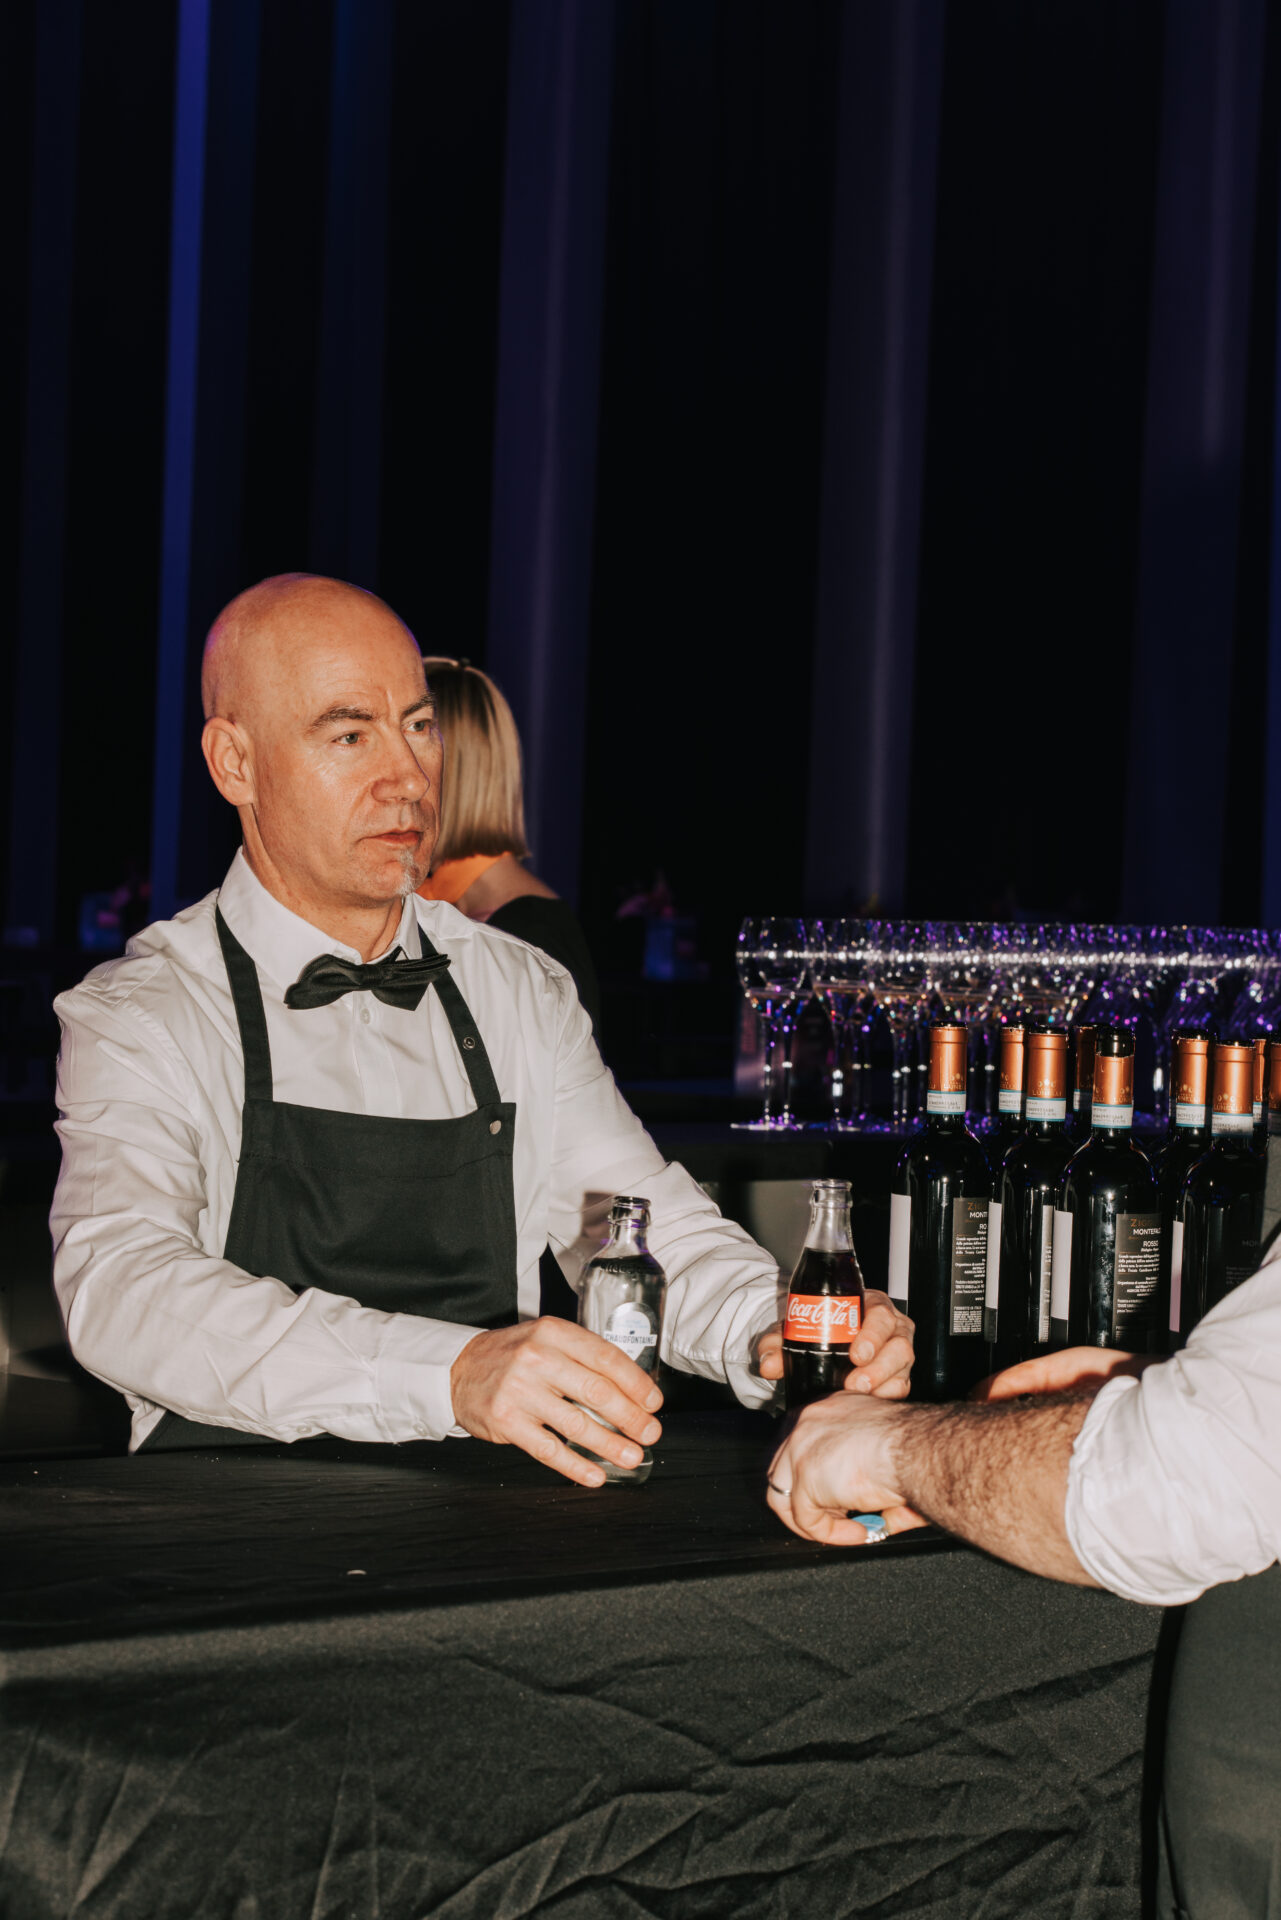 Een sfeerbeeld van een bartender die drank serveert op een evenement